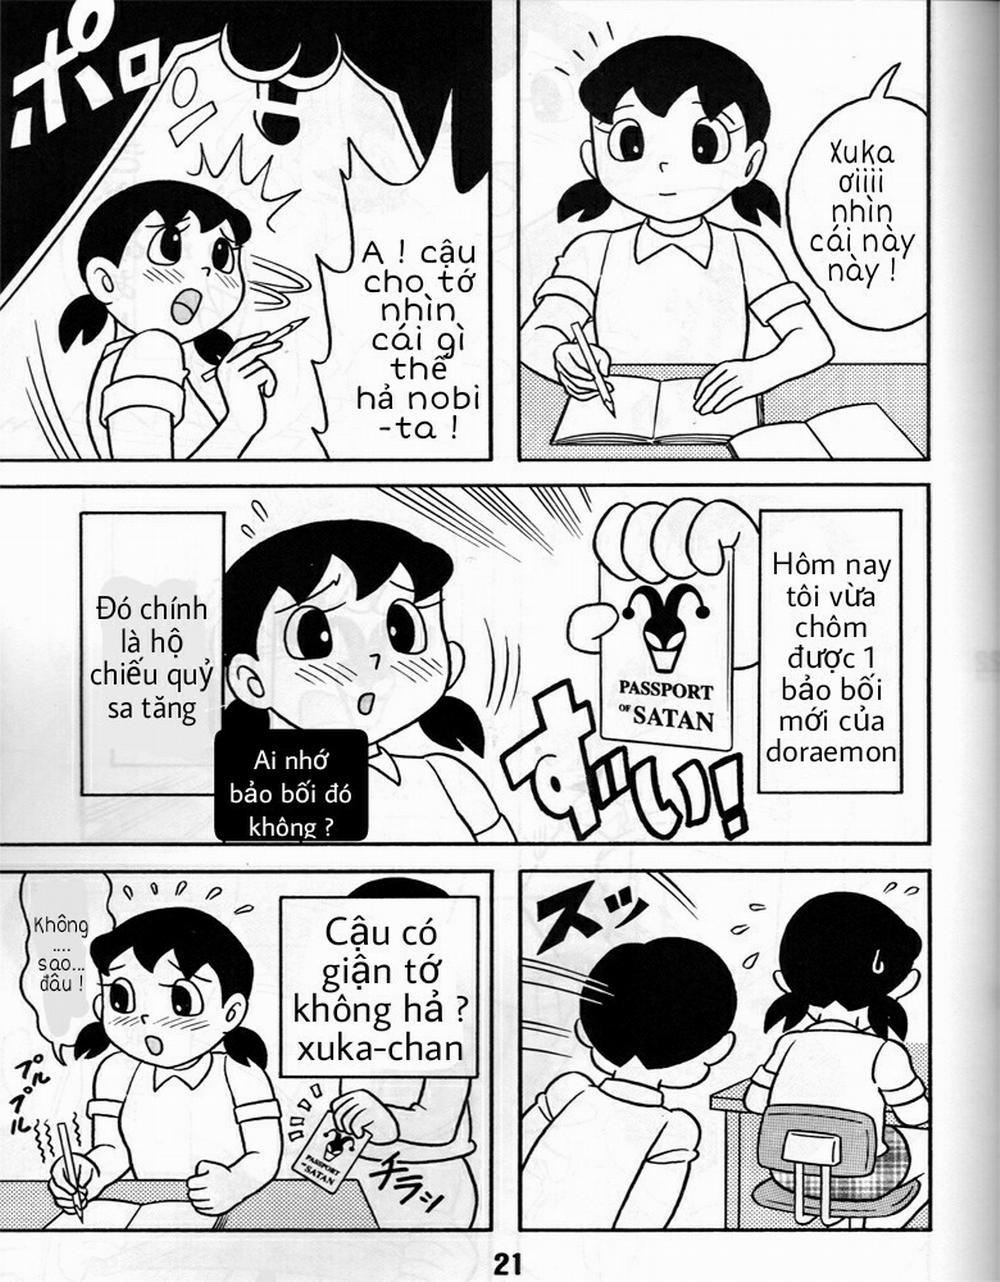 Tuyển Tập Doraemon Doujinshi 18+ Chương 8 H chi u qu sa t ng Trang 2